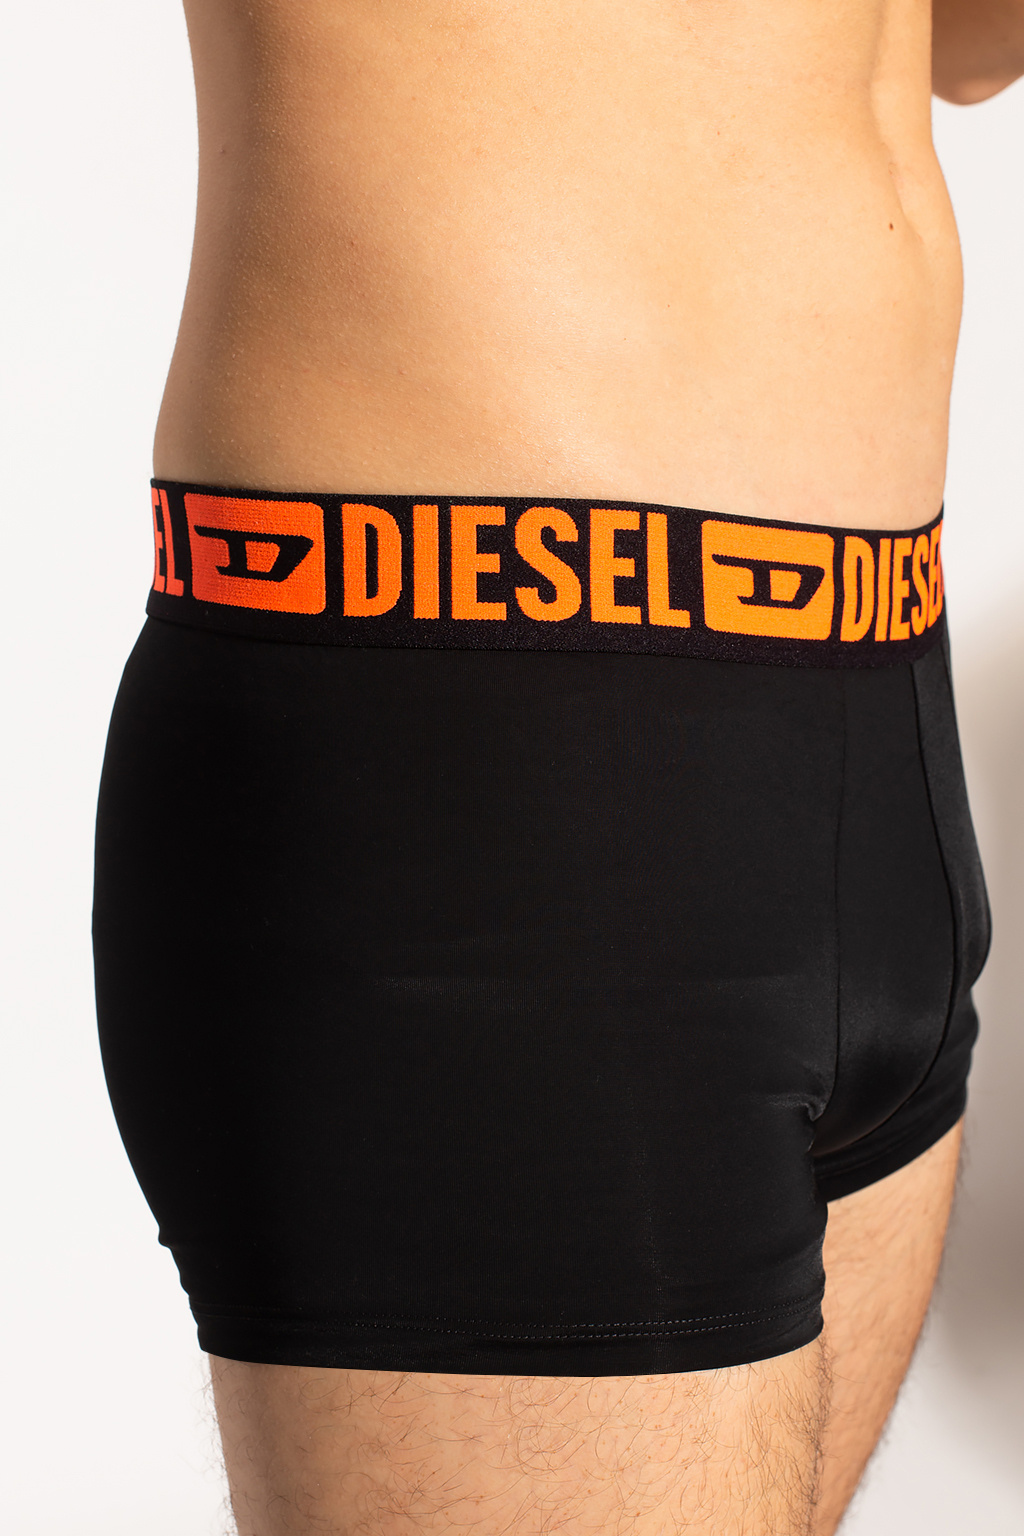 Diesel Boxers two-pack